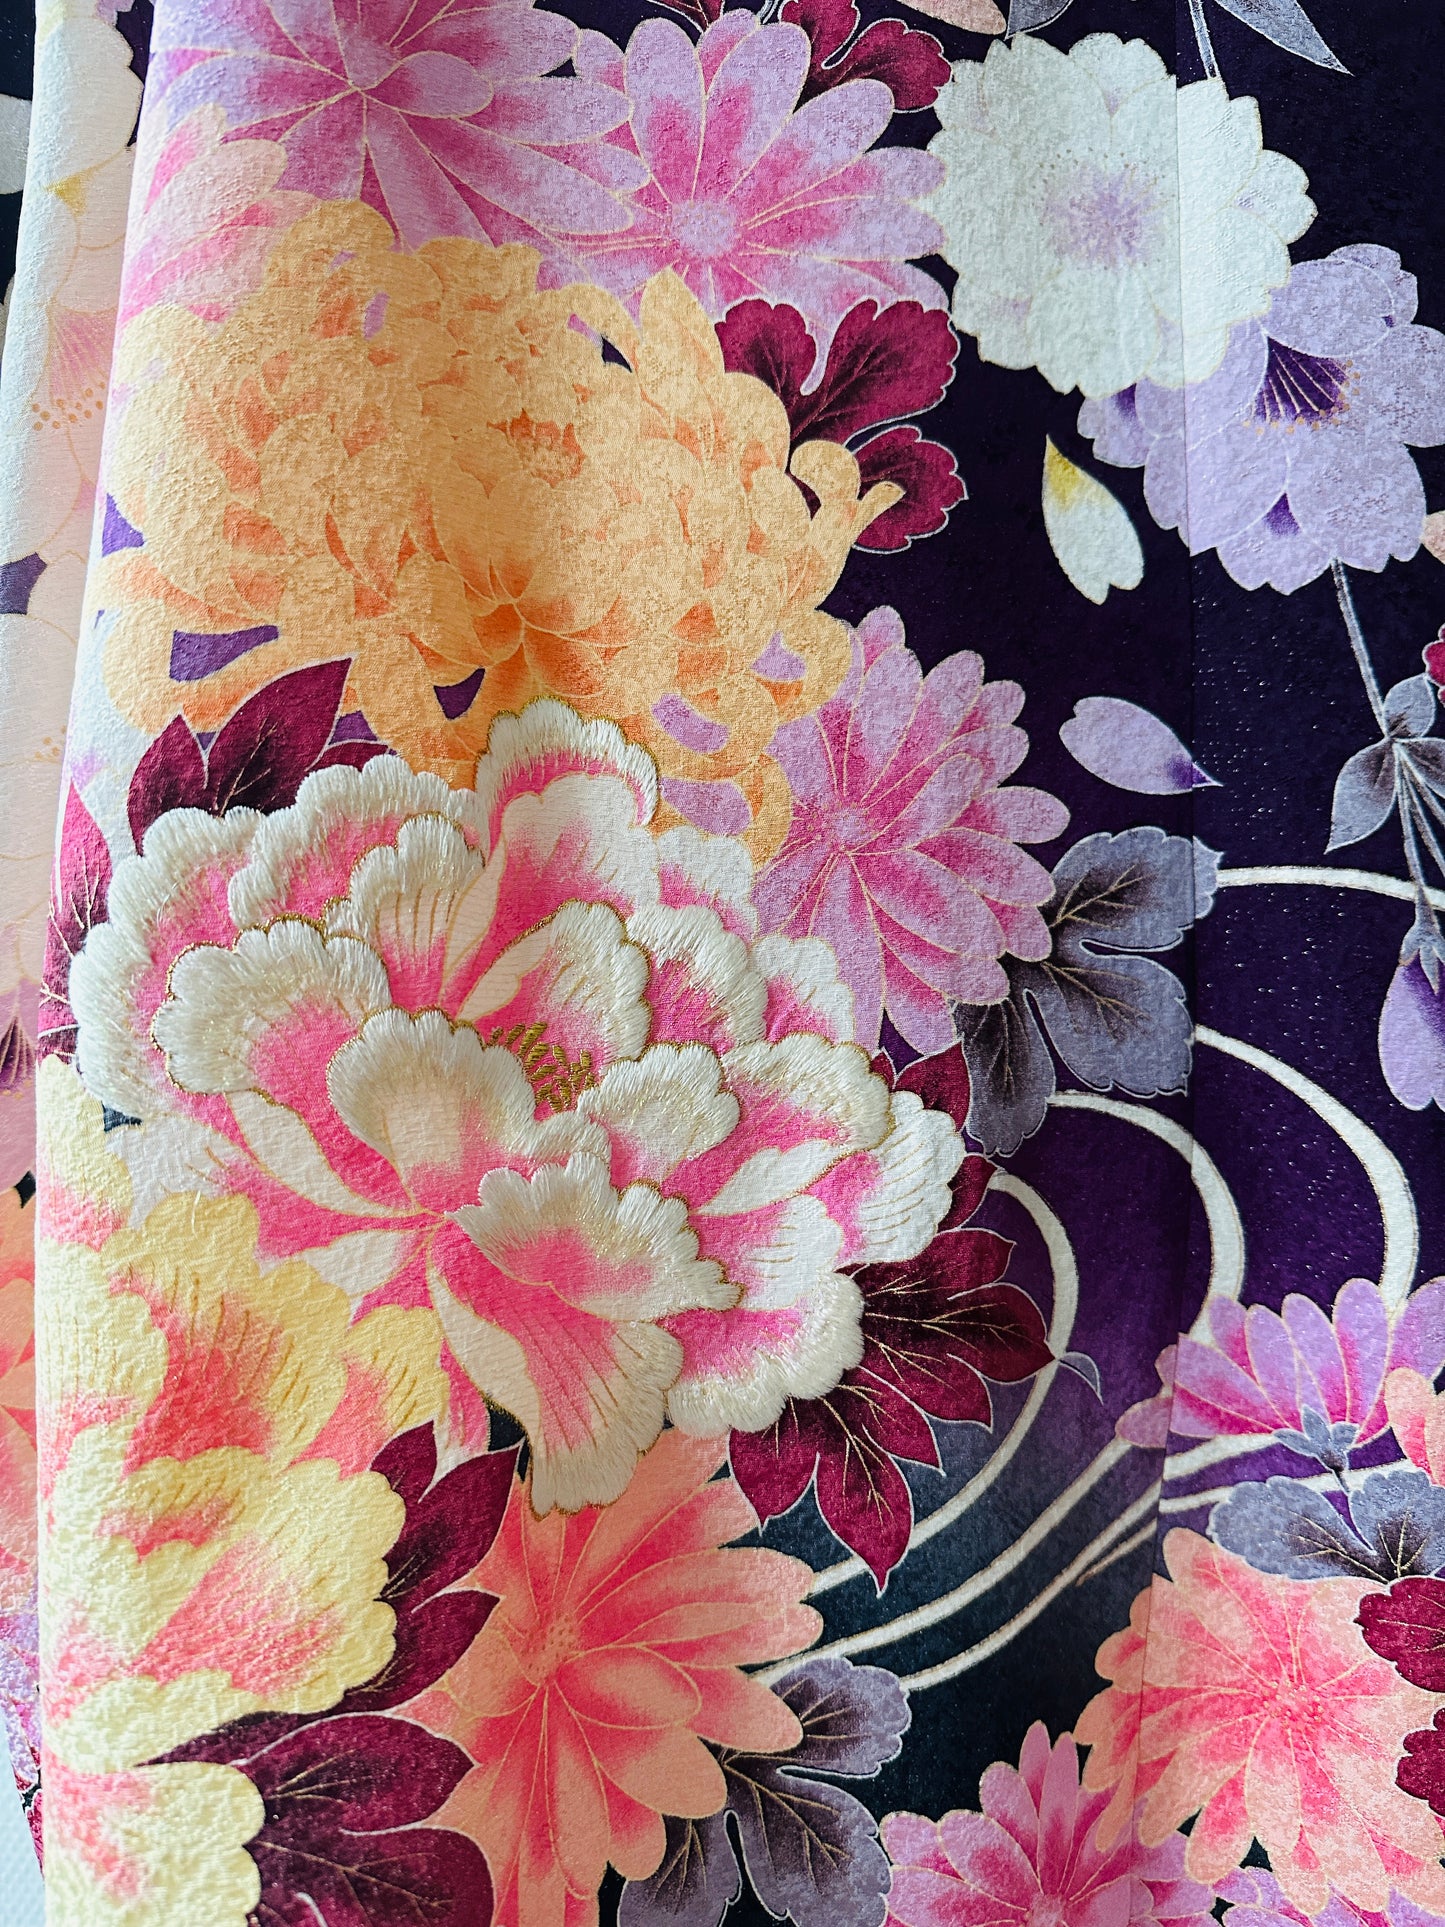 【Purple, Cherryblossom】 chemise / taille hawaïenne: 4L ＜ Nouveau ・ Silk ＞ pour les hommes, pour les femmes, le kimono japonais, les vêtements unisexais japonais, l'unisexe, les cadeaux japonais, l'article original